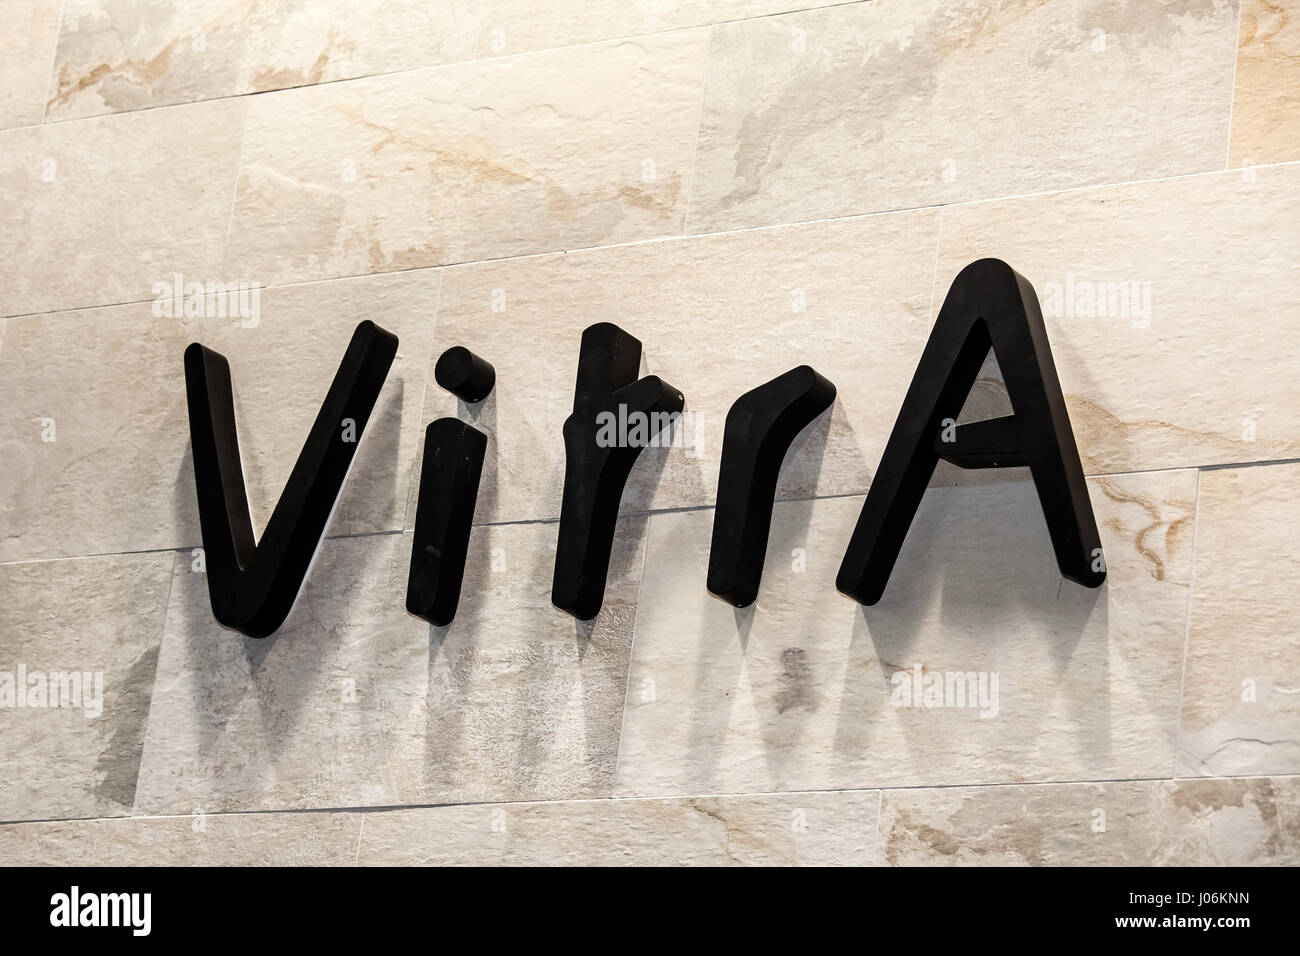 Logo Zeichen der Firma Vitra. VitrA ist ein türkischer Hersteller von Sanitärausstattung, Badmöbel, Messinggeschirr und keramische Fliesen Stockfoto